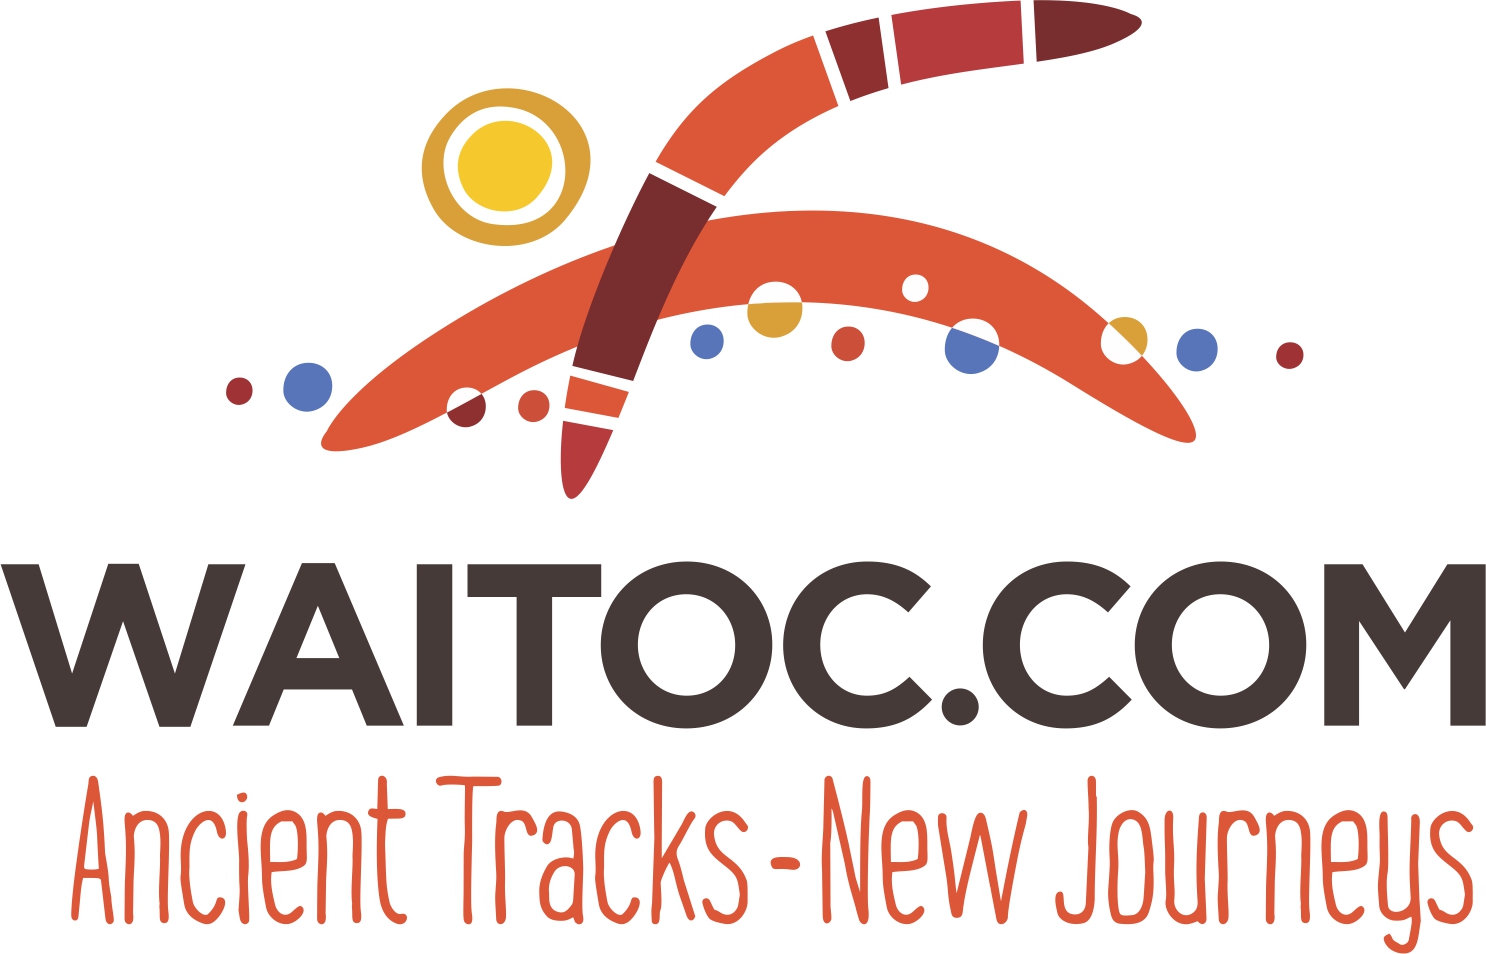 WAITOC logo